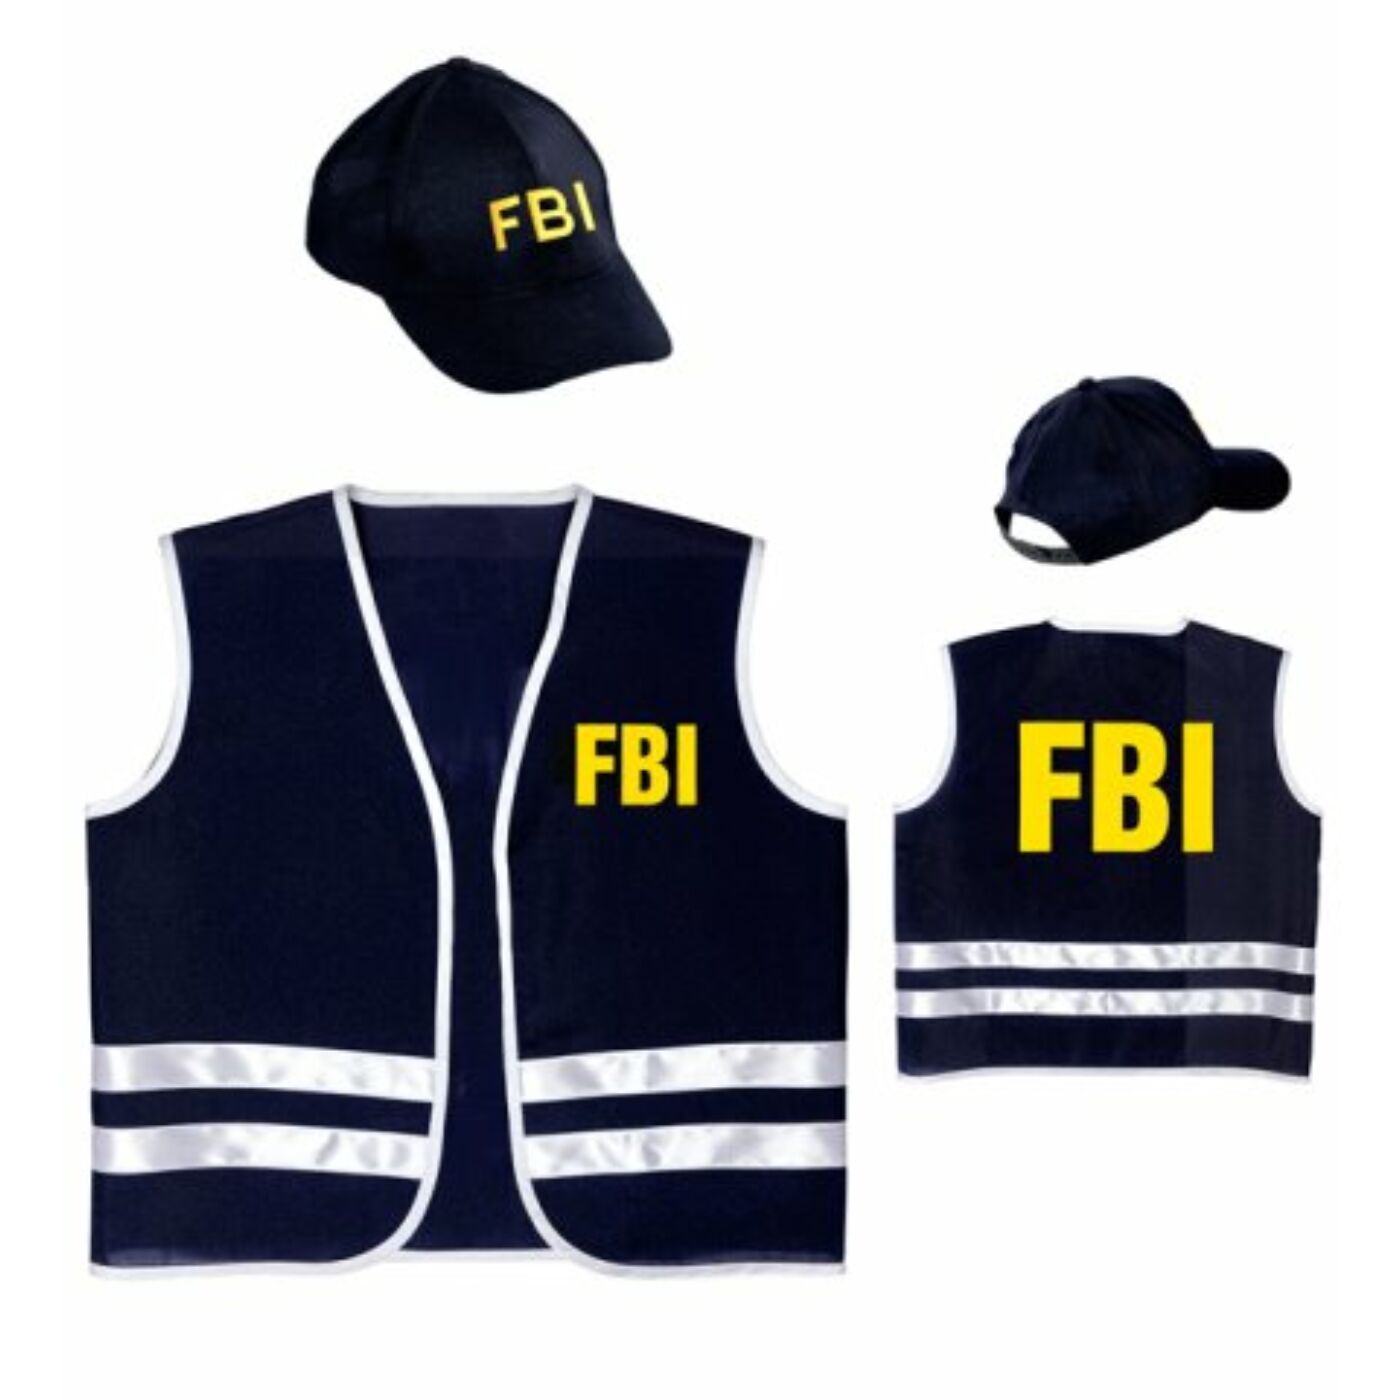 FBI szett